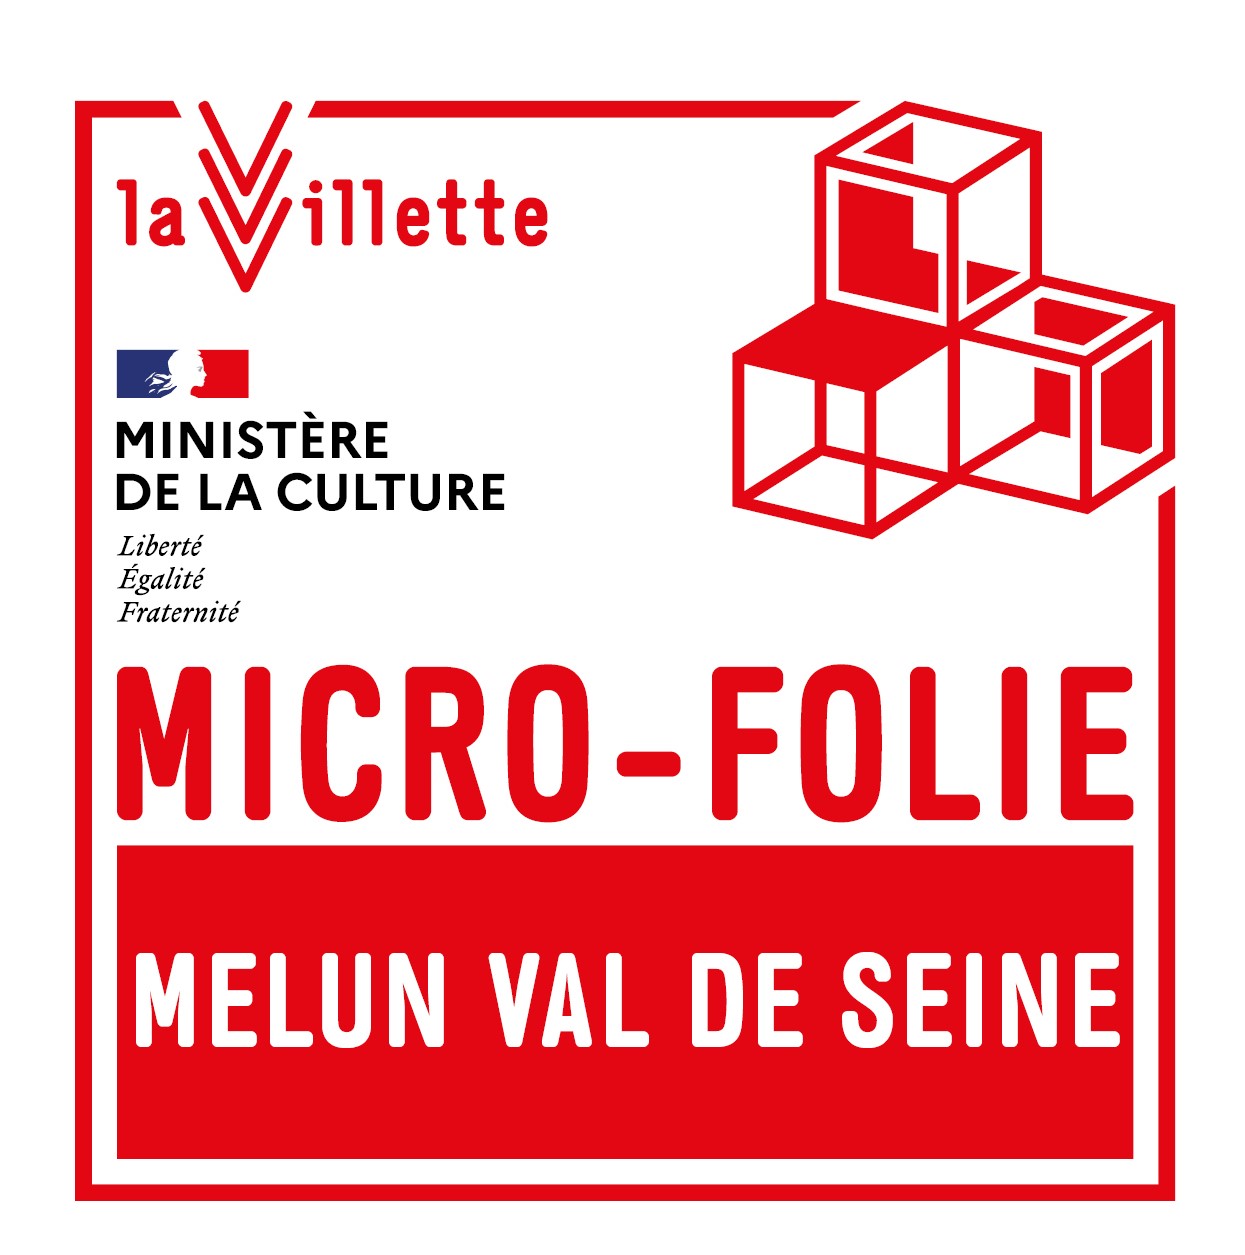 Micro Folie Melun Val de Seine